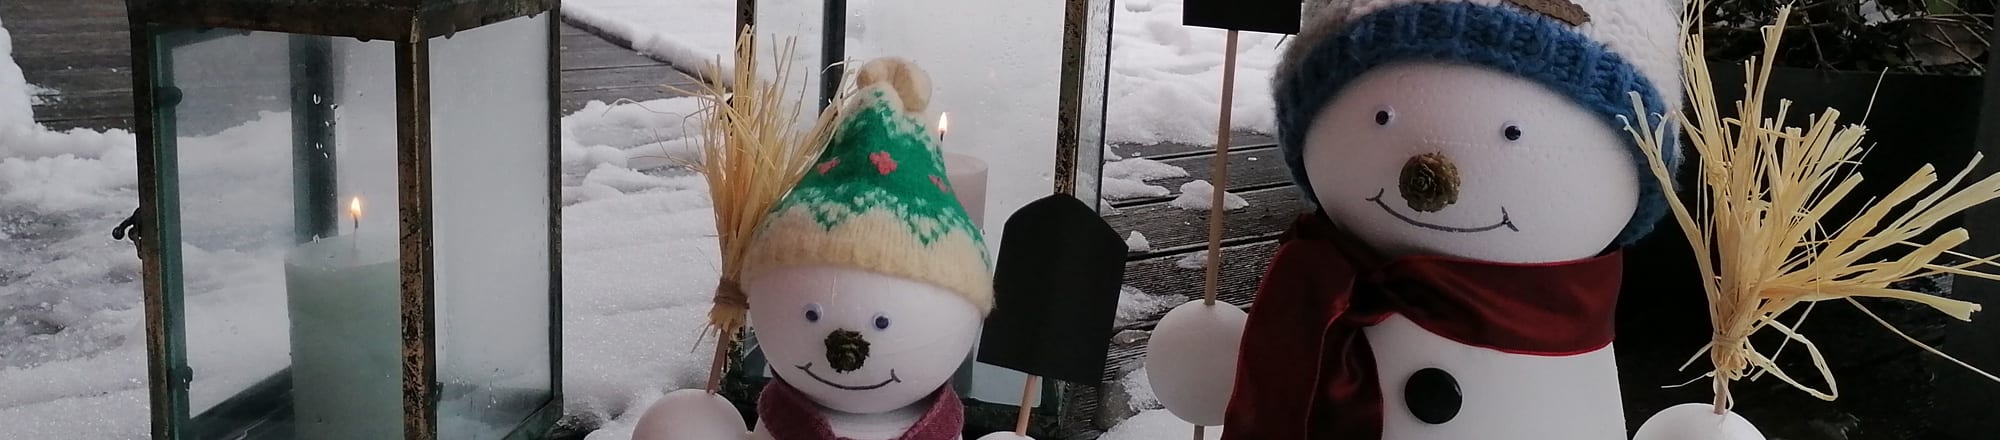 Cool - bonhomme de neige «Frosty»